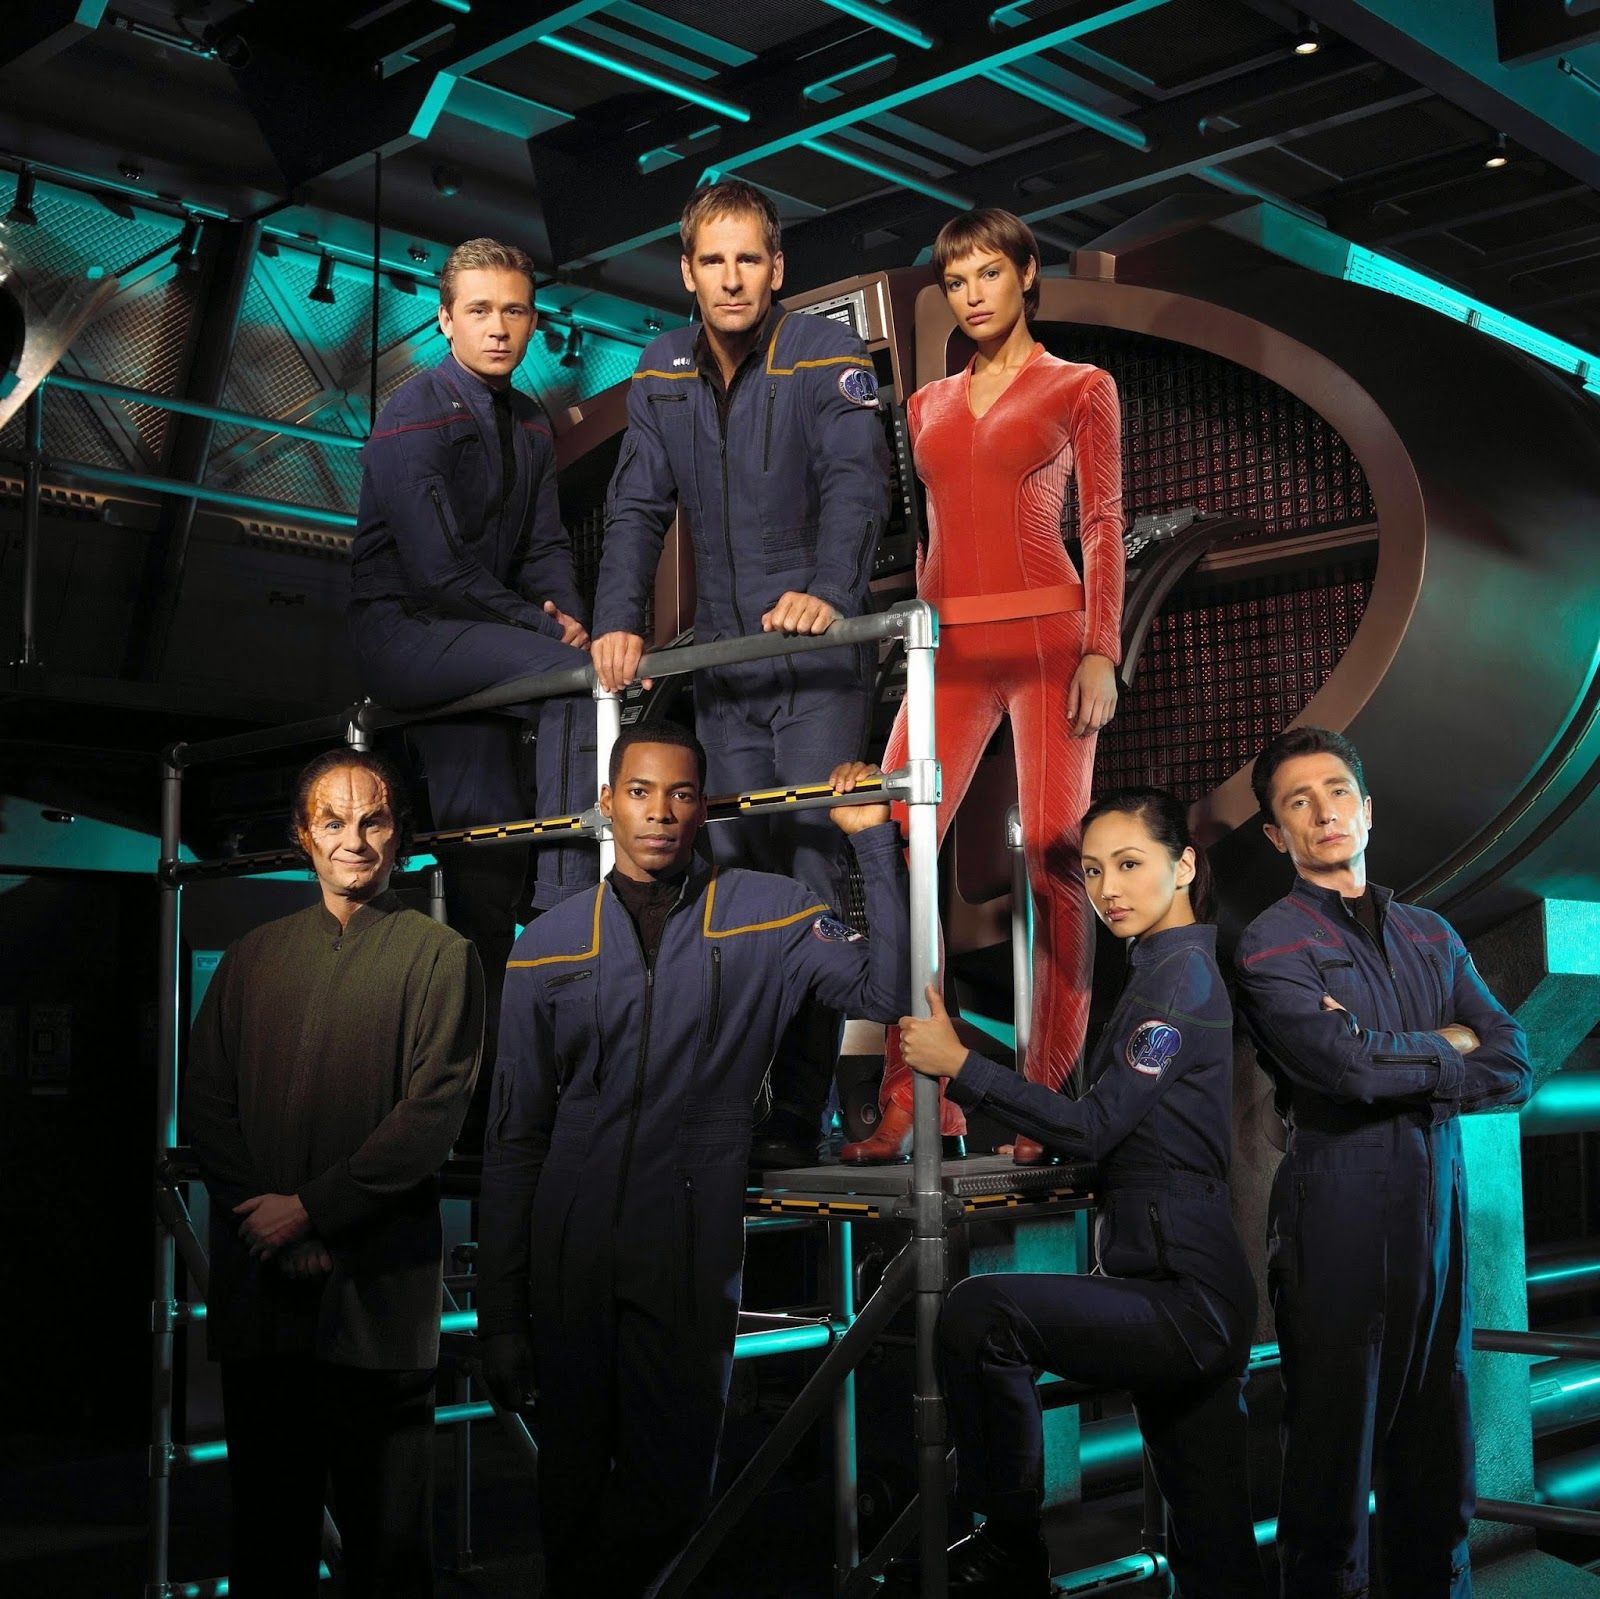 Star Trek: Enterprise wallpaper, TV Show, HQ Star Trek: Enterprise pictureK Wallpaper 2019